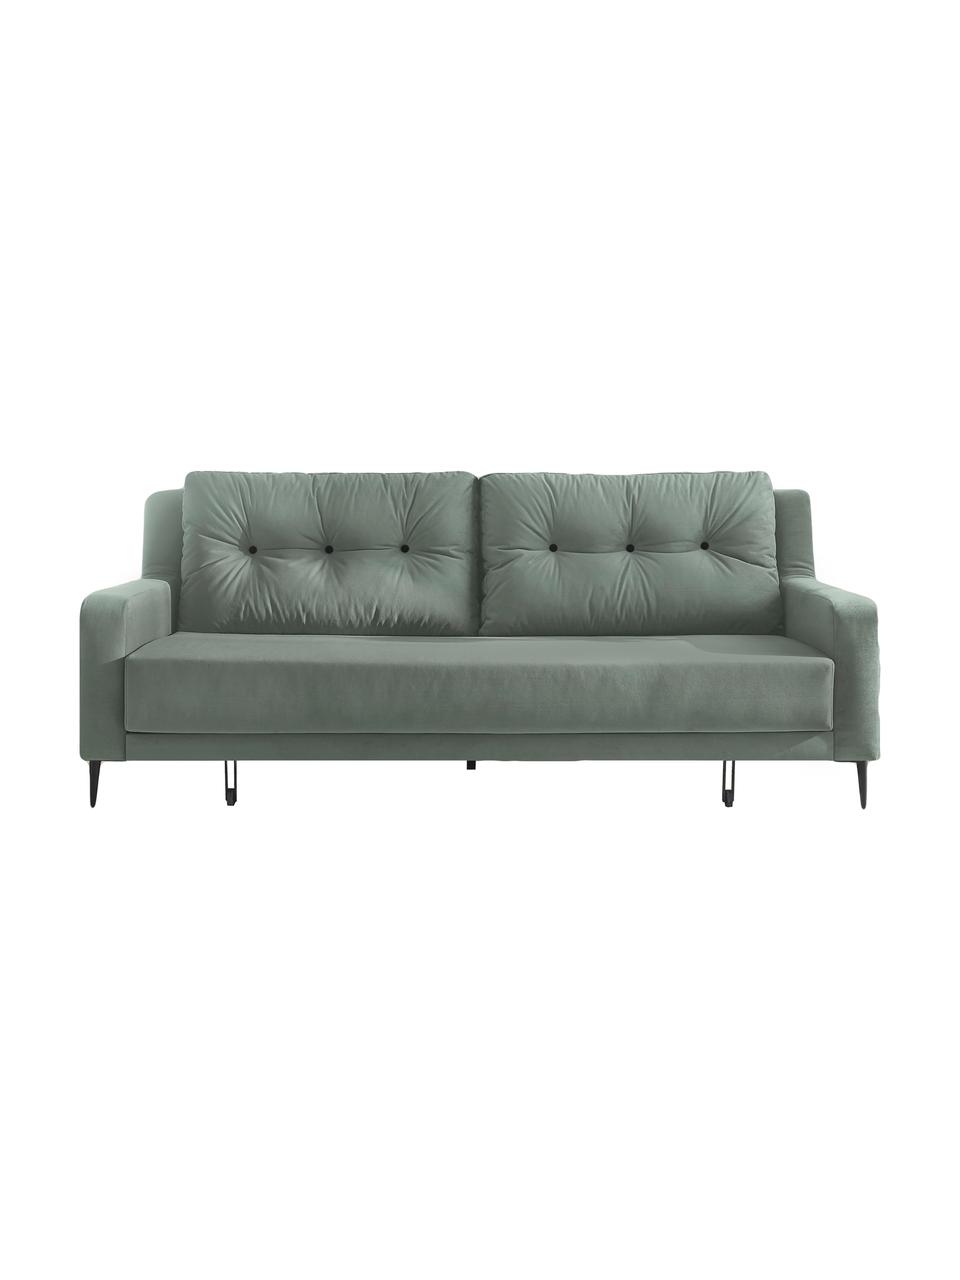 Sofa rozkładana z aksamitu Bergen (3-osobowa), Tapicerka: 100% aksamit poliestrowy, Nogi: metal lakierowany, Zielony miętowy, S 222 x G 92 cm